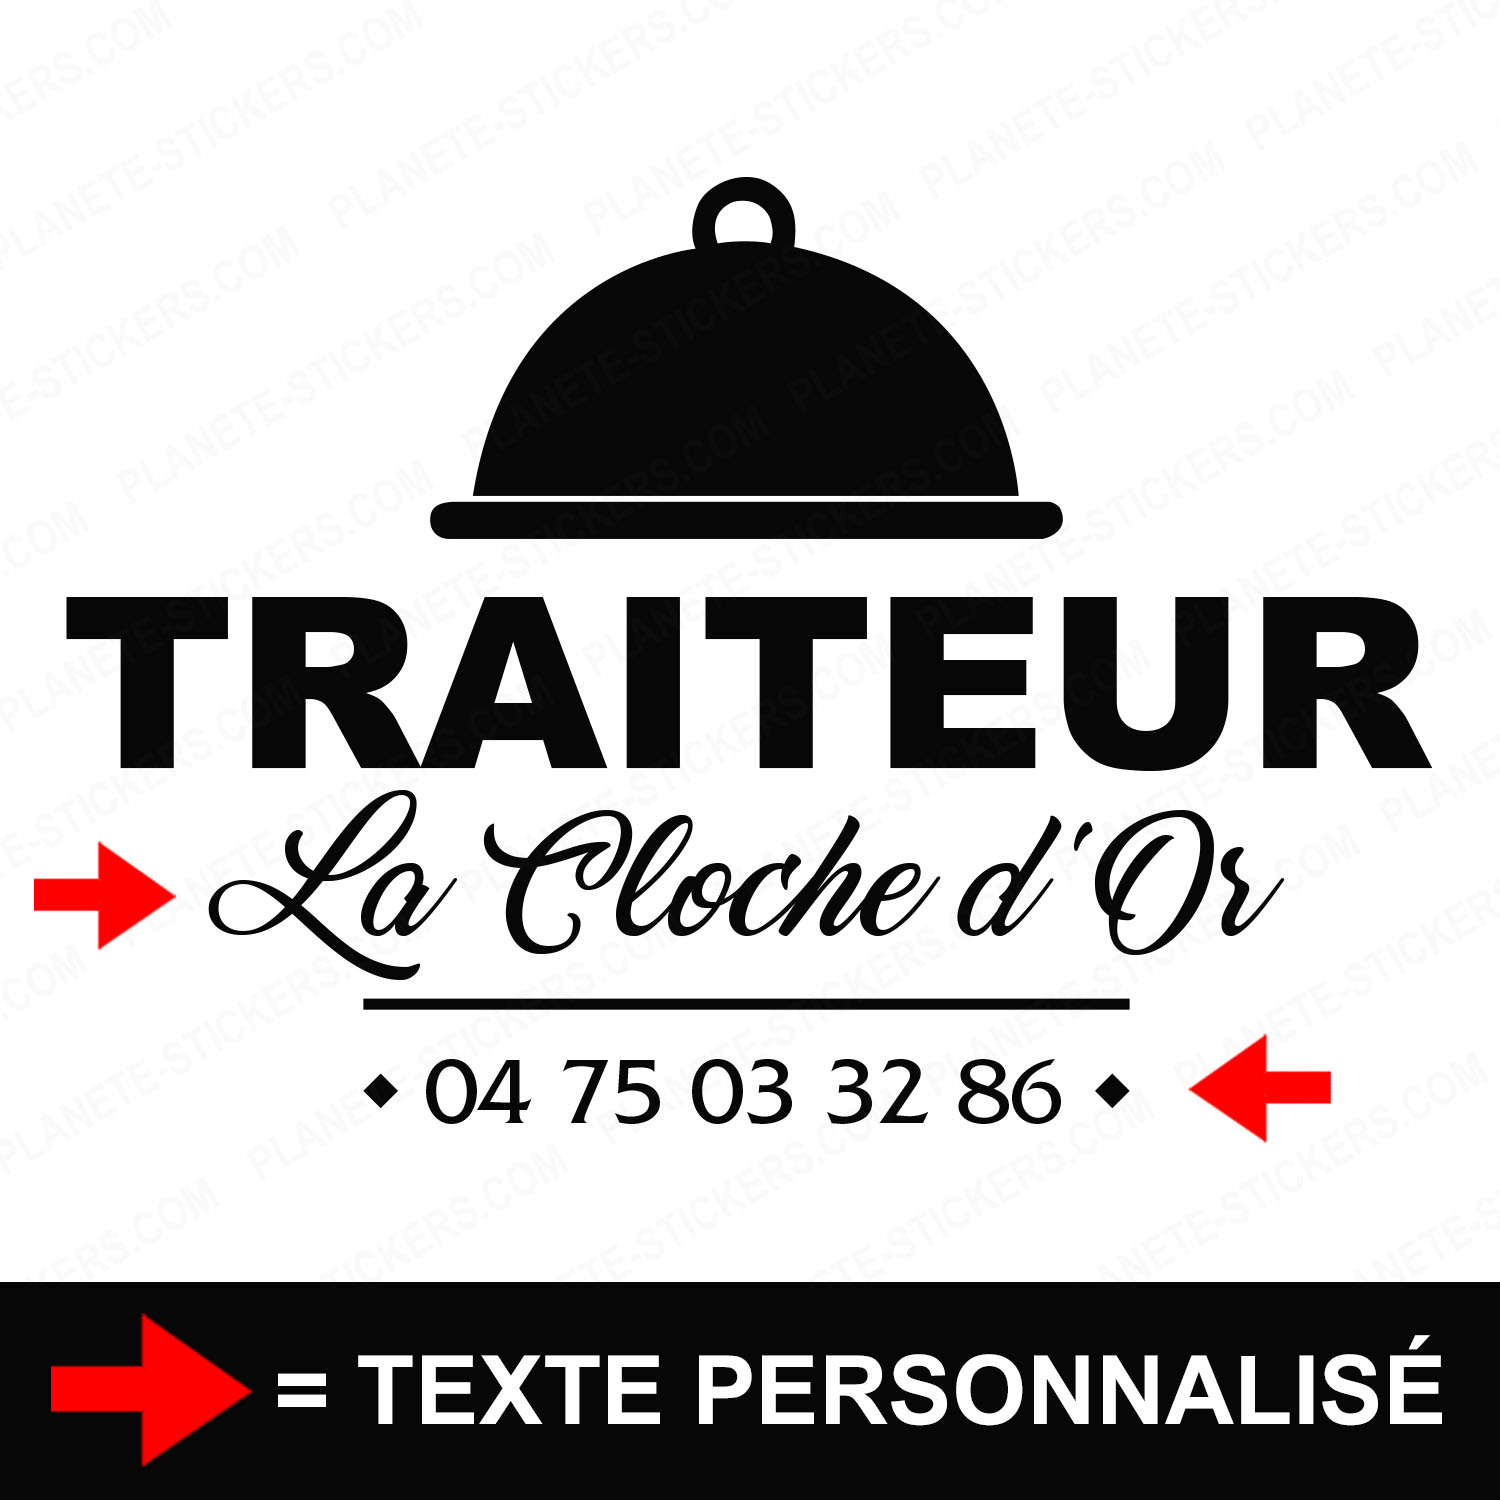 ref1traiteurvitrine-stickers-traiteur-vitrine-sticker-personnalisé-autocollant-pro-restaurateur-restaurant-vitre-professionnel-logo-cloche-2